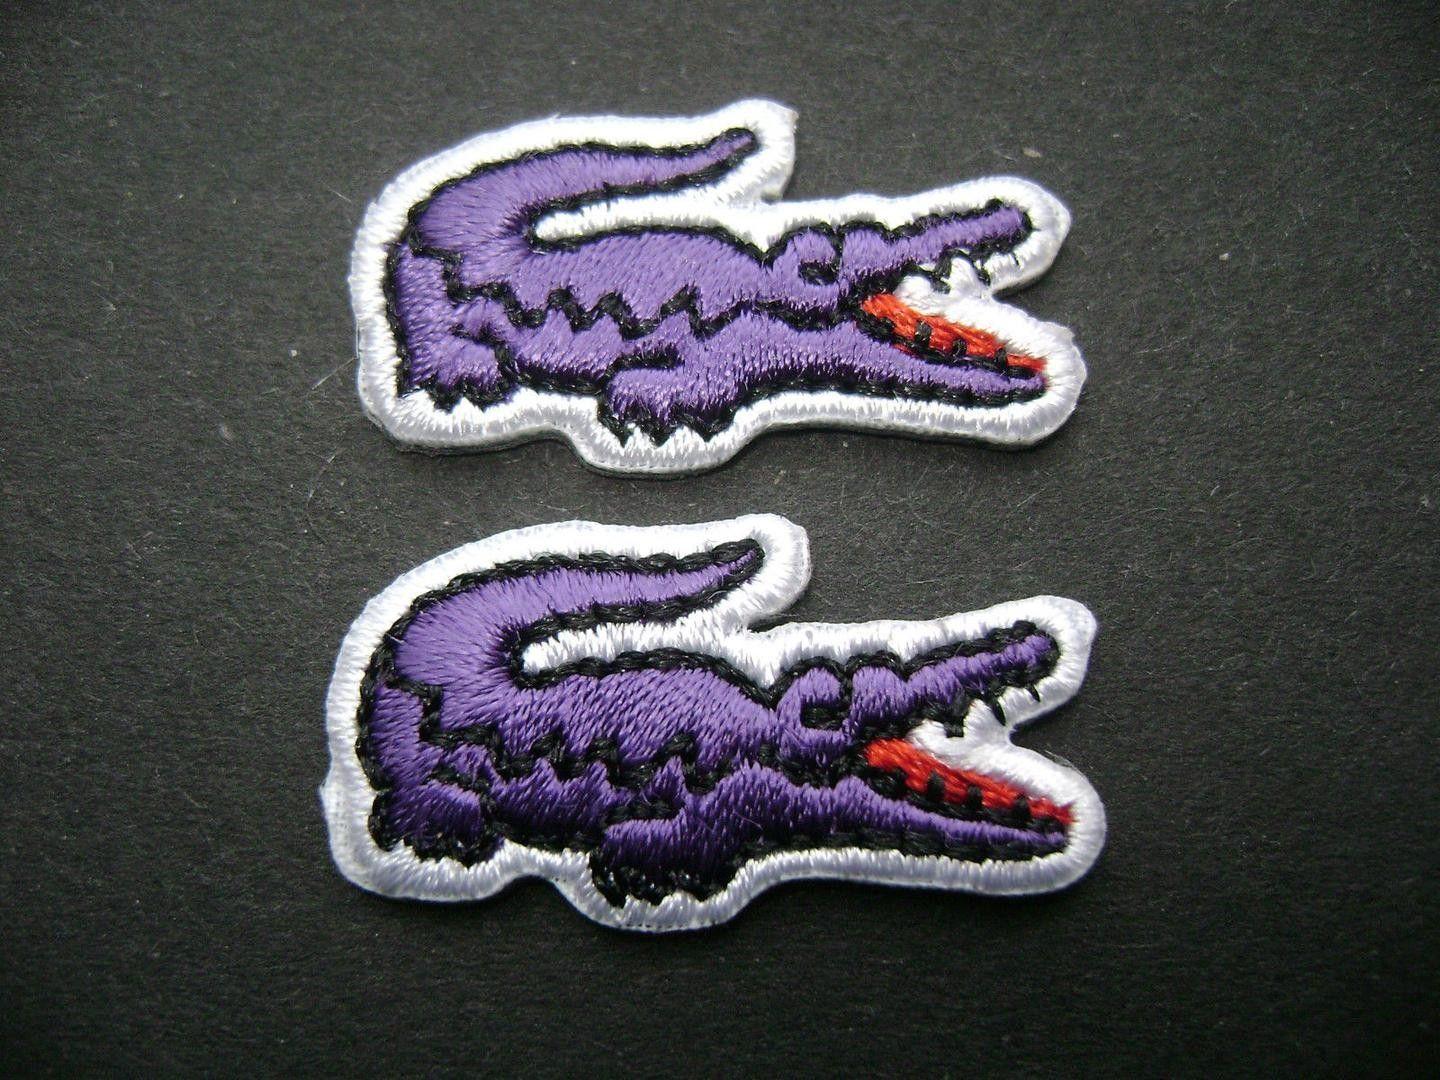 Lacoste Alligator Logo - Lacoste Crocodile Alligator Emblem Logo Iron on Sew on Embroidered